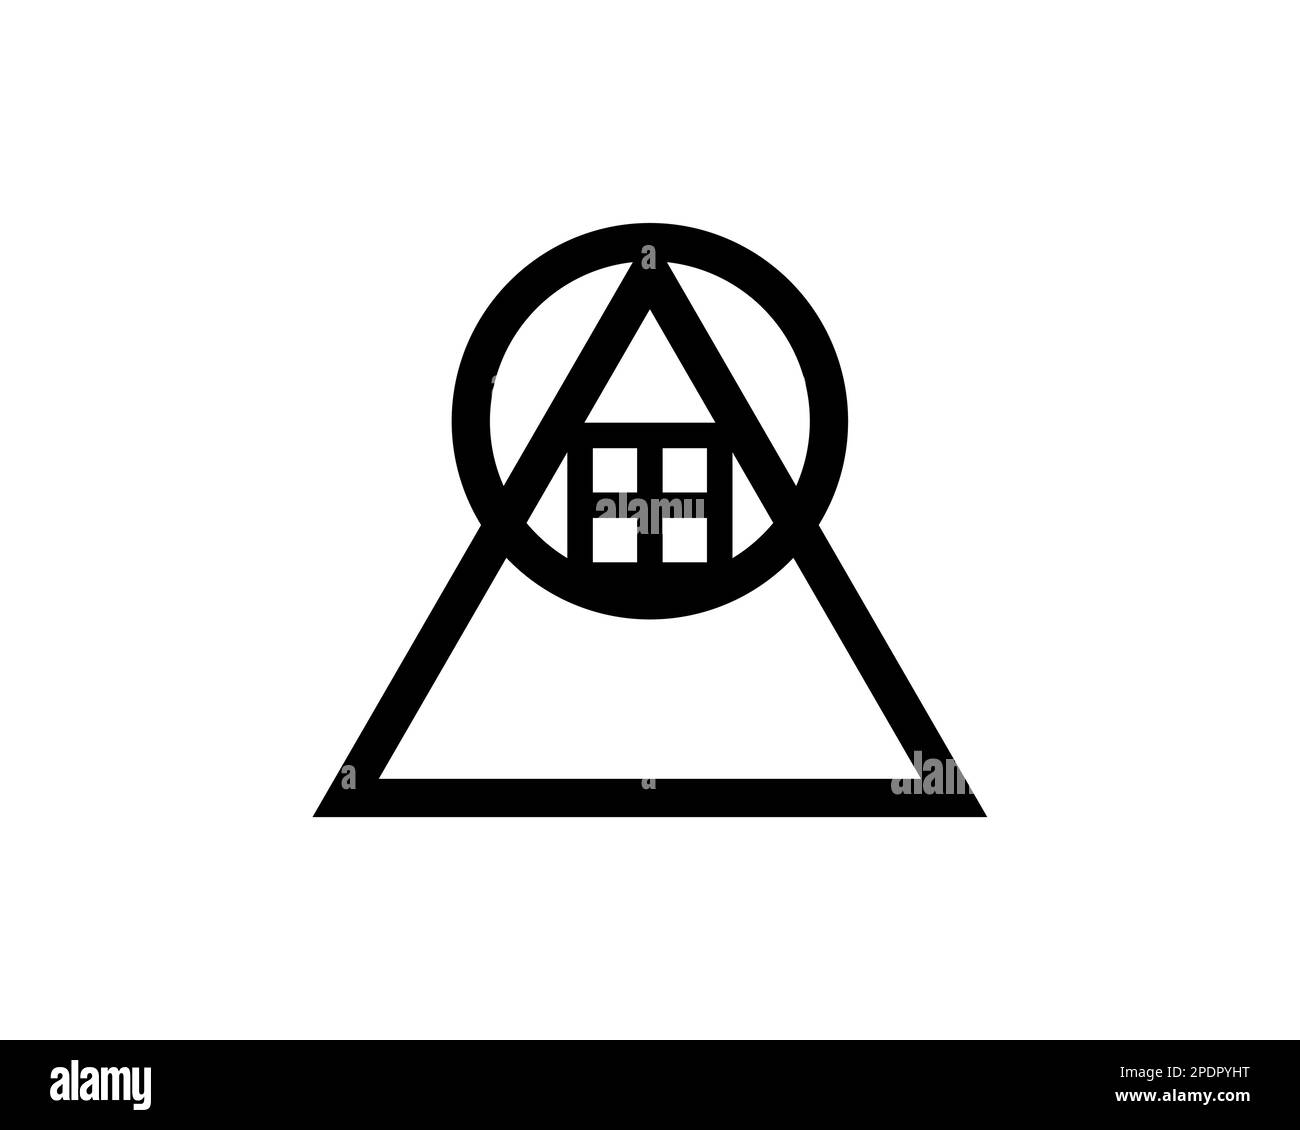 Géométrie sacrée, symbole du tarot de jugement, signe géométrique alchimique, vecteur isolé sur fond blanc Illustration de Vecteur